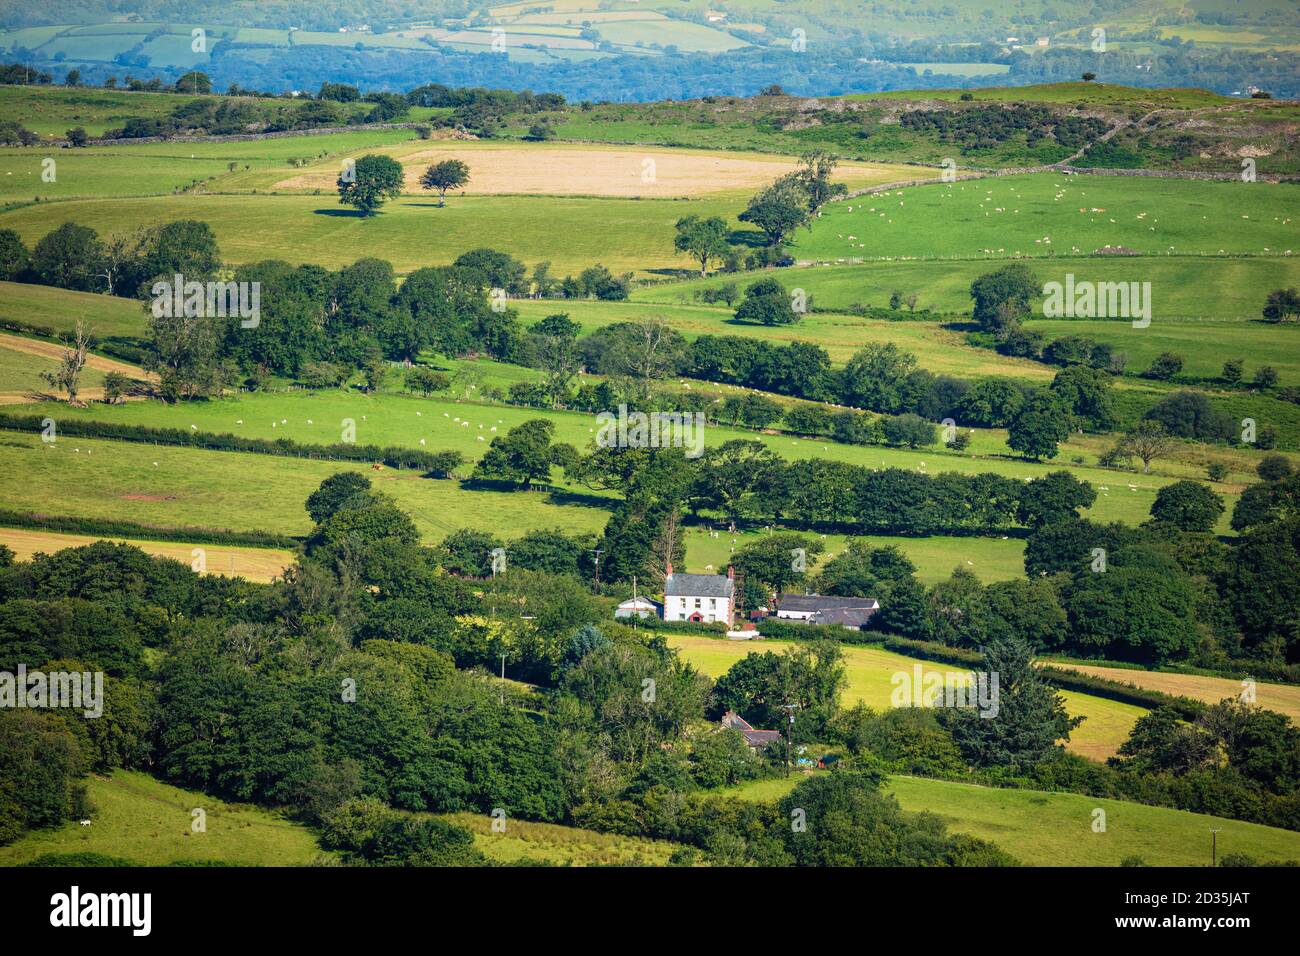 Reino Unido, Gales, Carmarthenshire, Llandeilo, Parque Nacional Brecon Beacons. Escena rural de campos, hedgerows, páramos y una casa tradicional galesa blanca Foto de stock